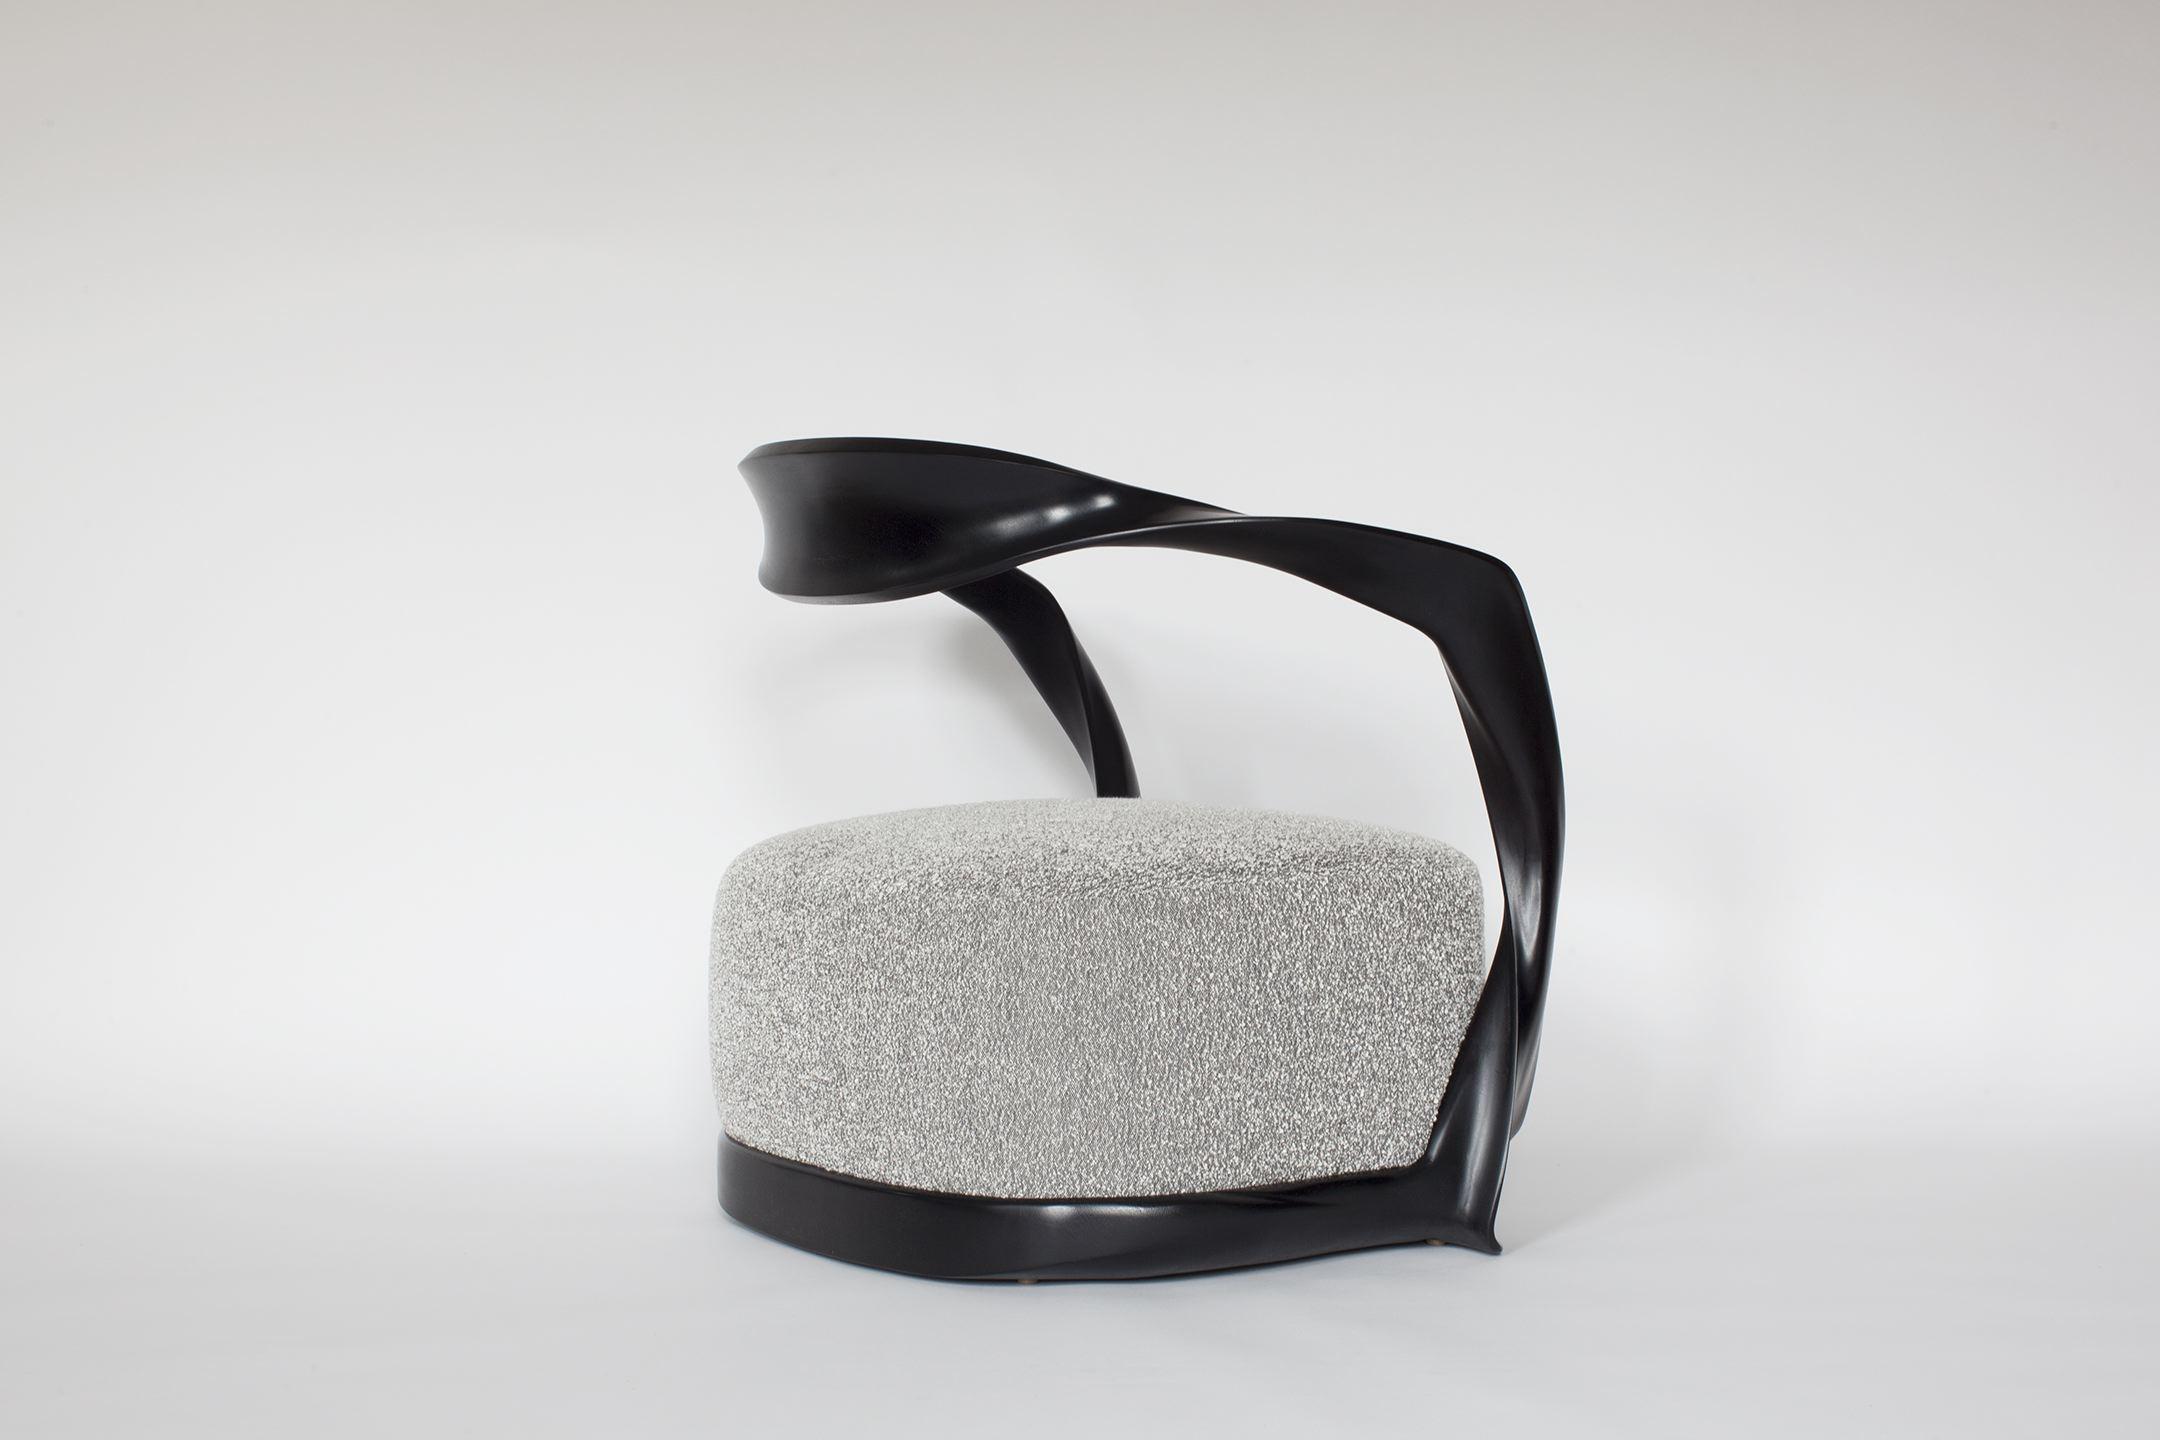 Ce fauteuil sculptural sculpté à la main fait partie d'une gamme de meubles contemporains conçus en associant la technologie numérique à un artisanat traditionnel de qualité. Le fauteuil est doté d'un large dossier en porte-à-faux, ainsi que